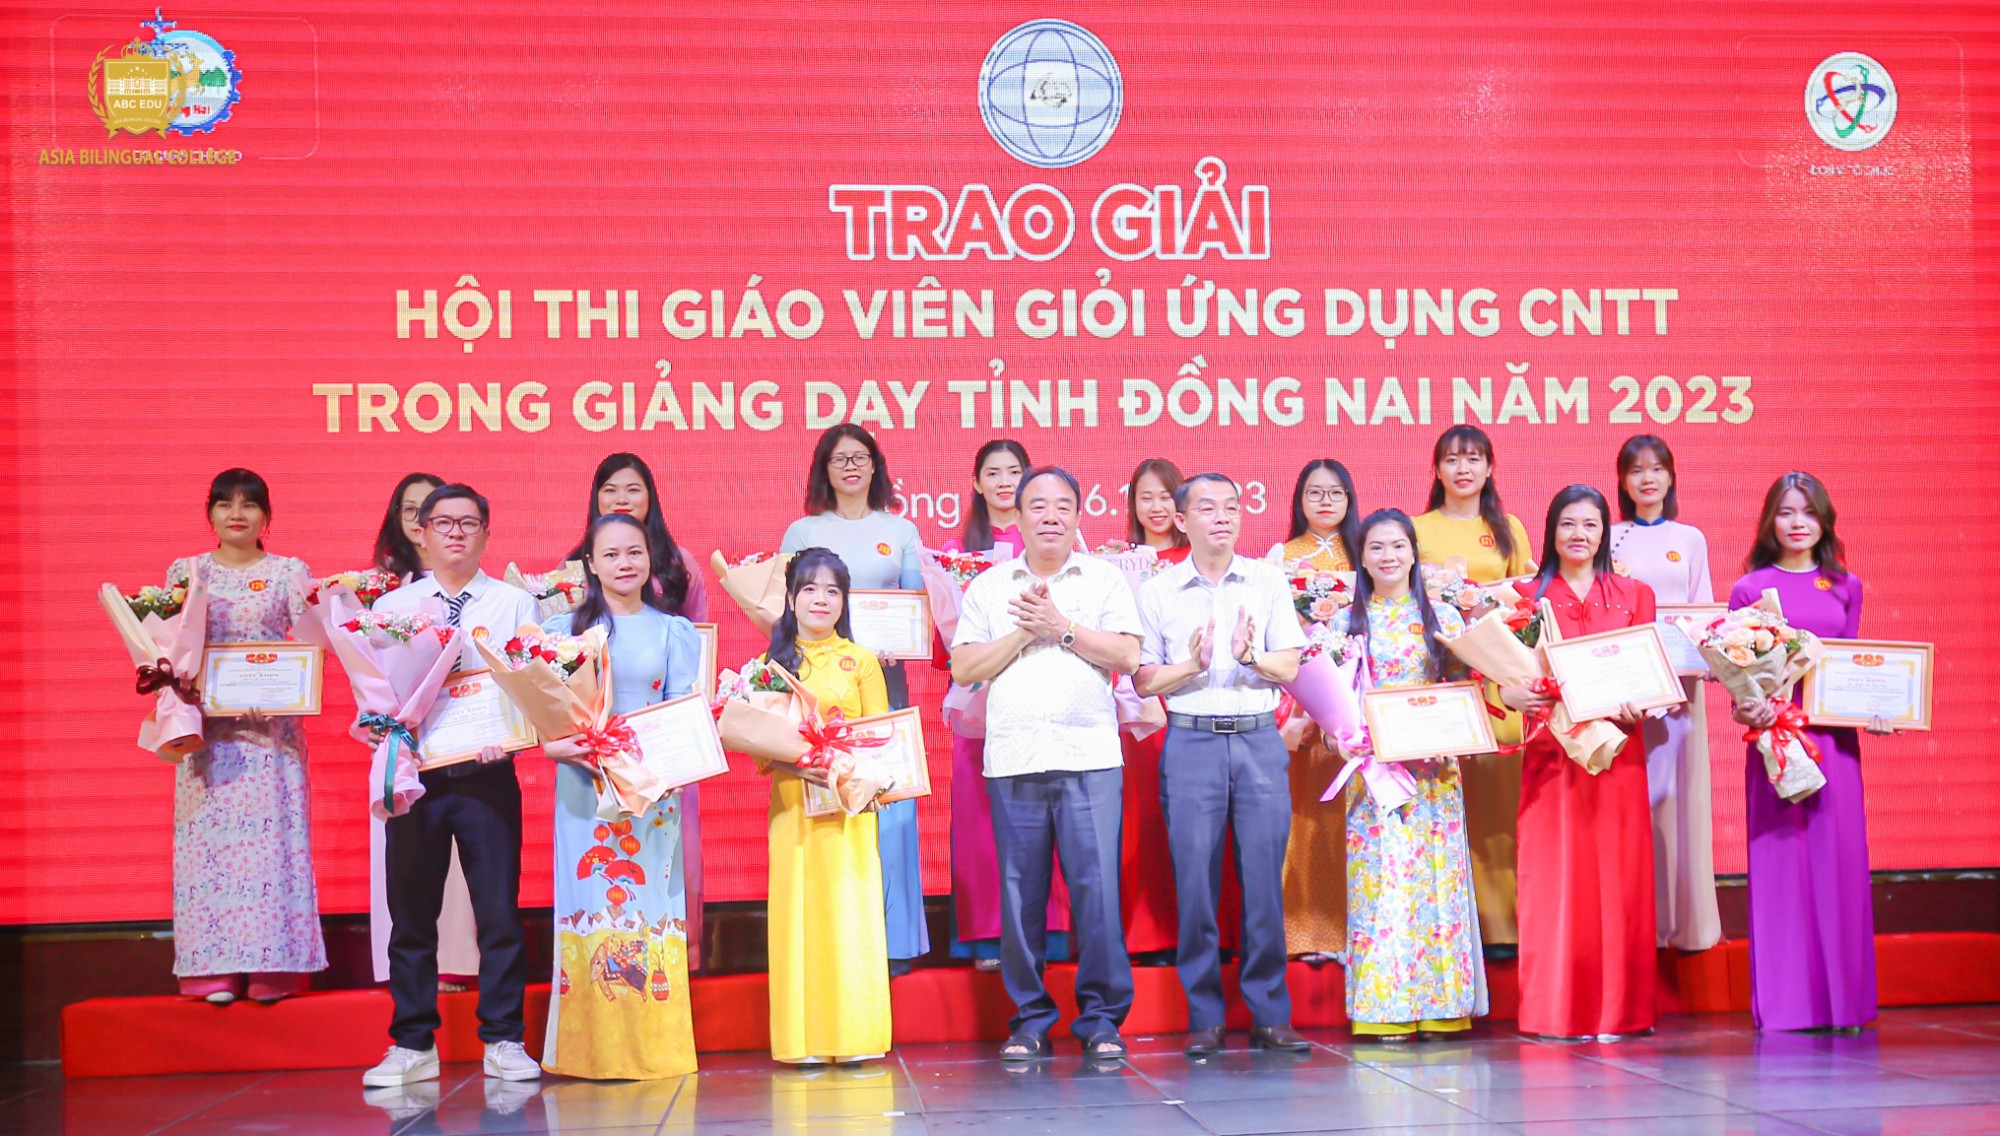 Trường Song ngữ Á Châu chúc mừng Giáo viên đạt giải Cấp Tỉnh